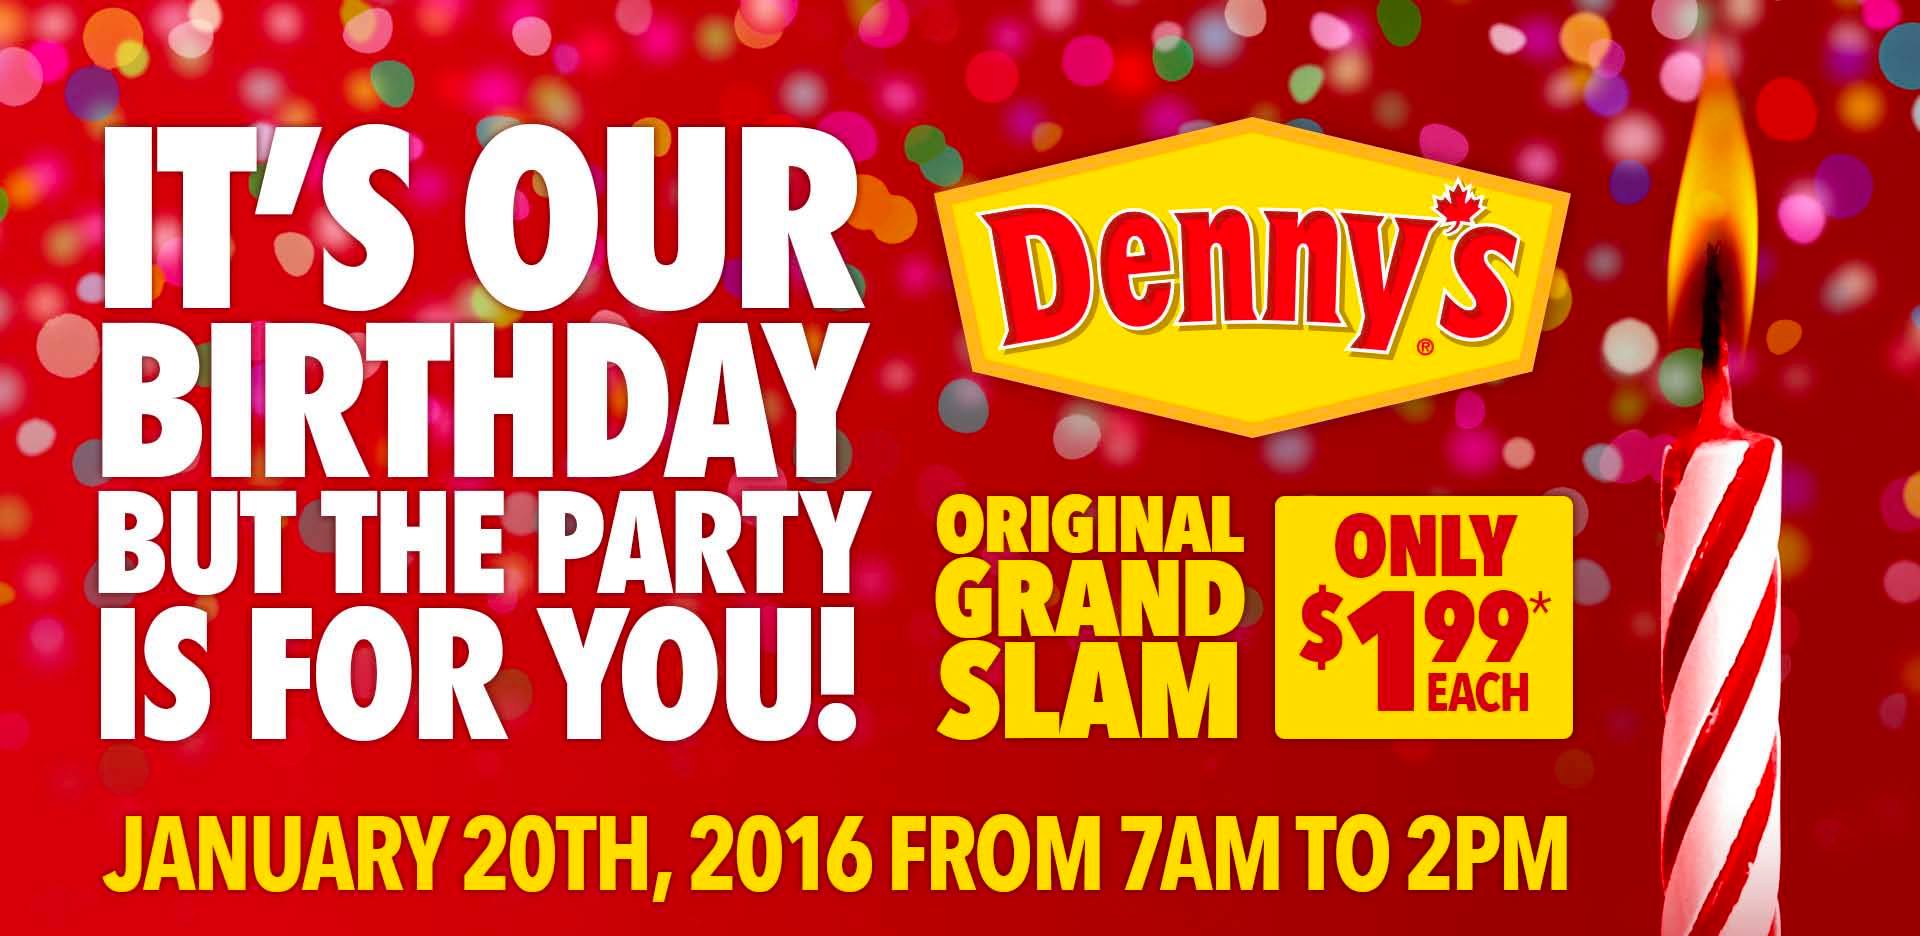 [逾期]Denny’s：Grand Slam早餐只需$1.99